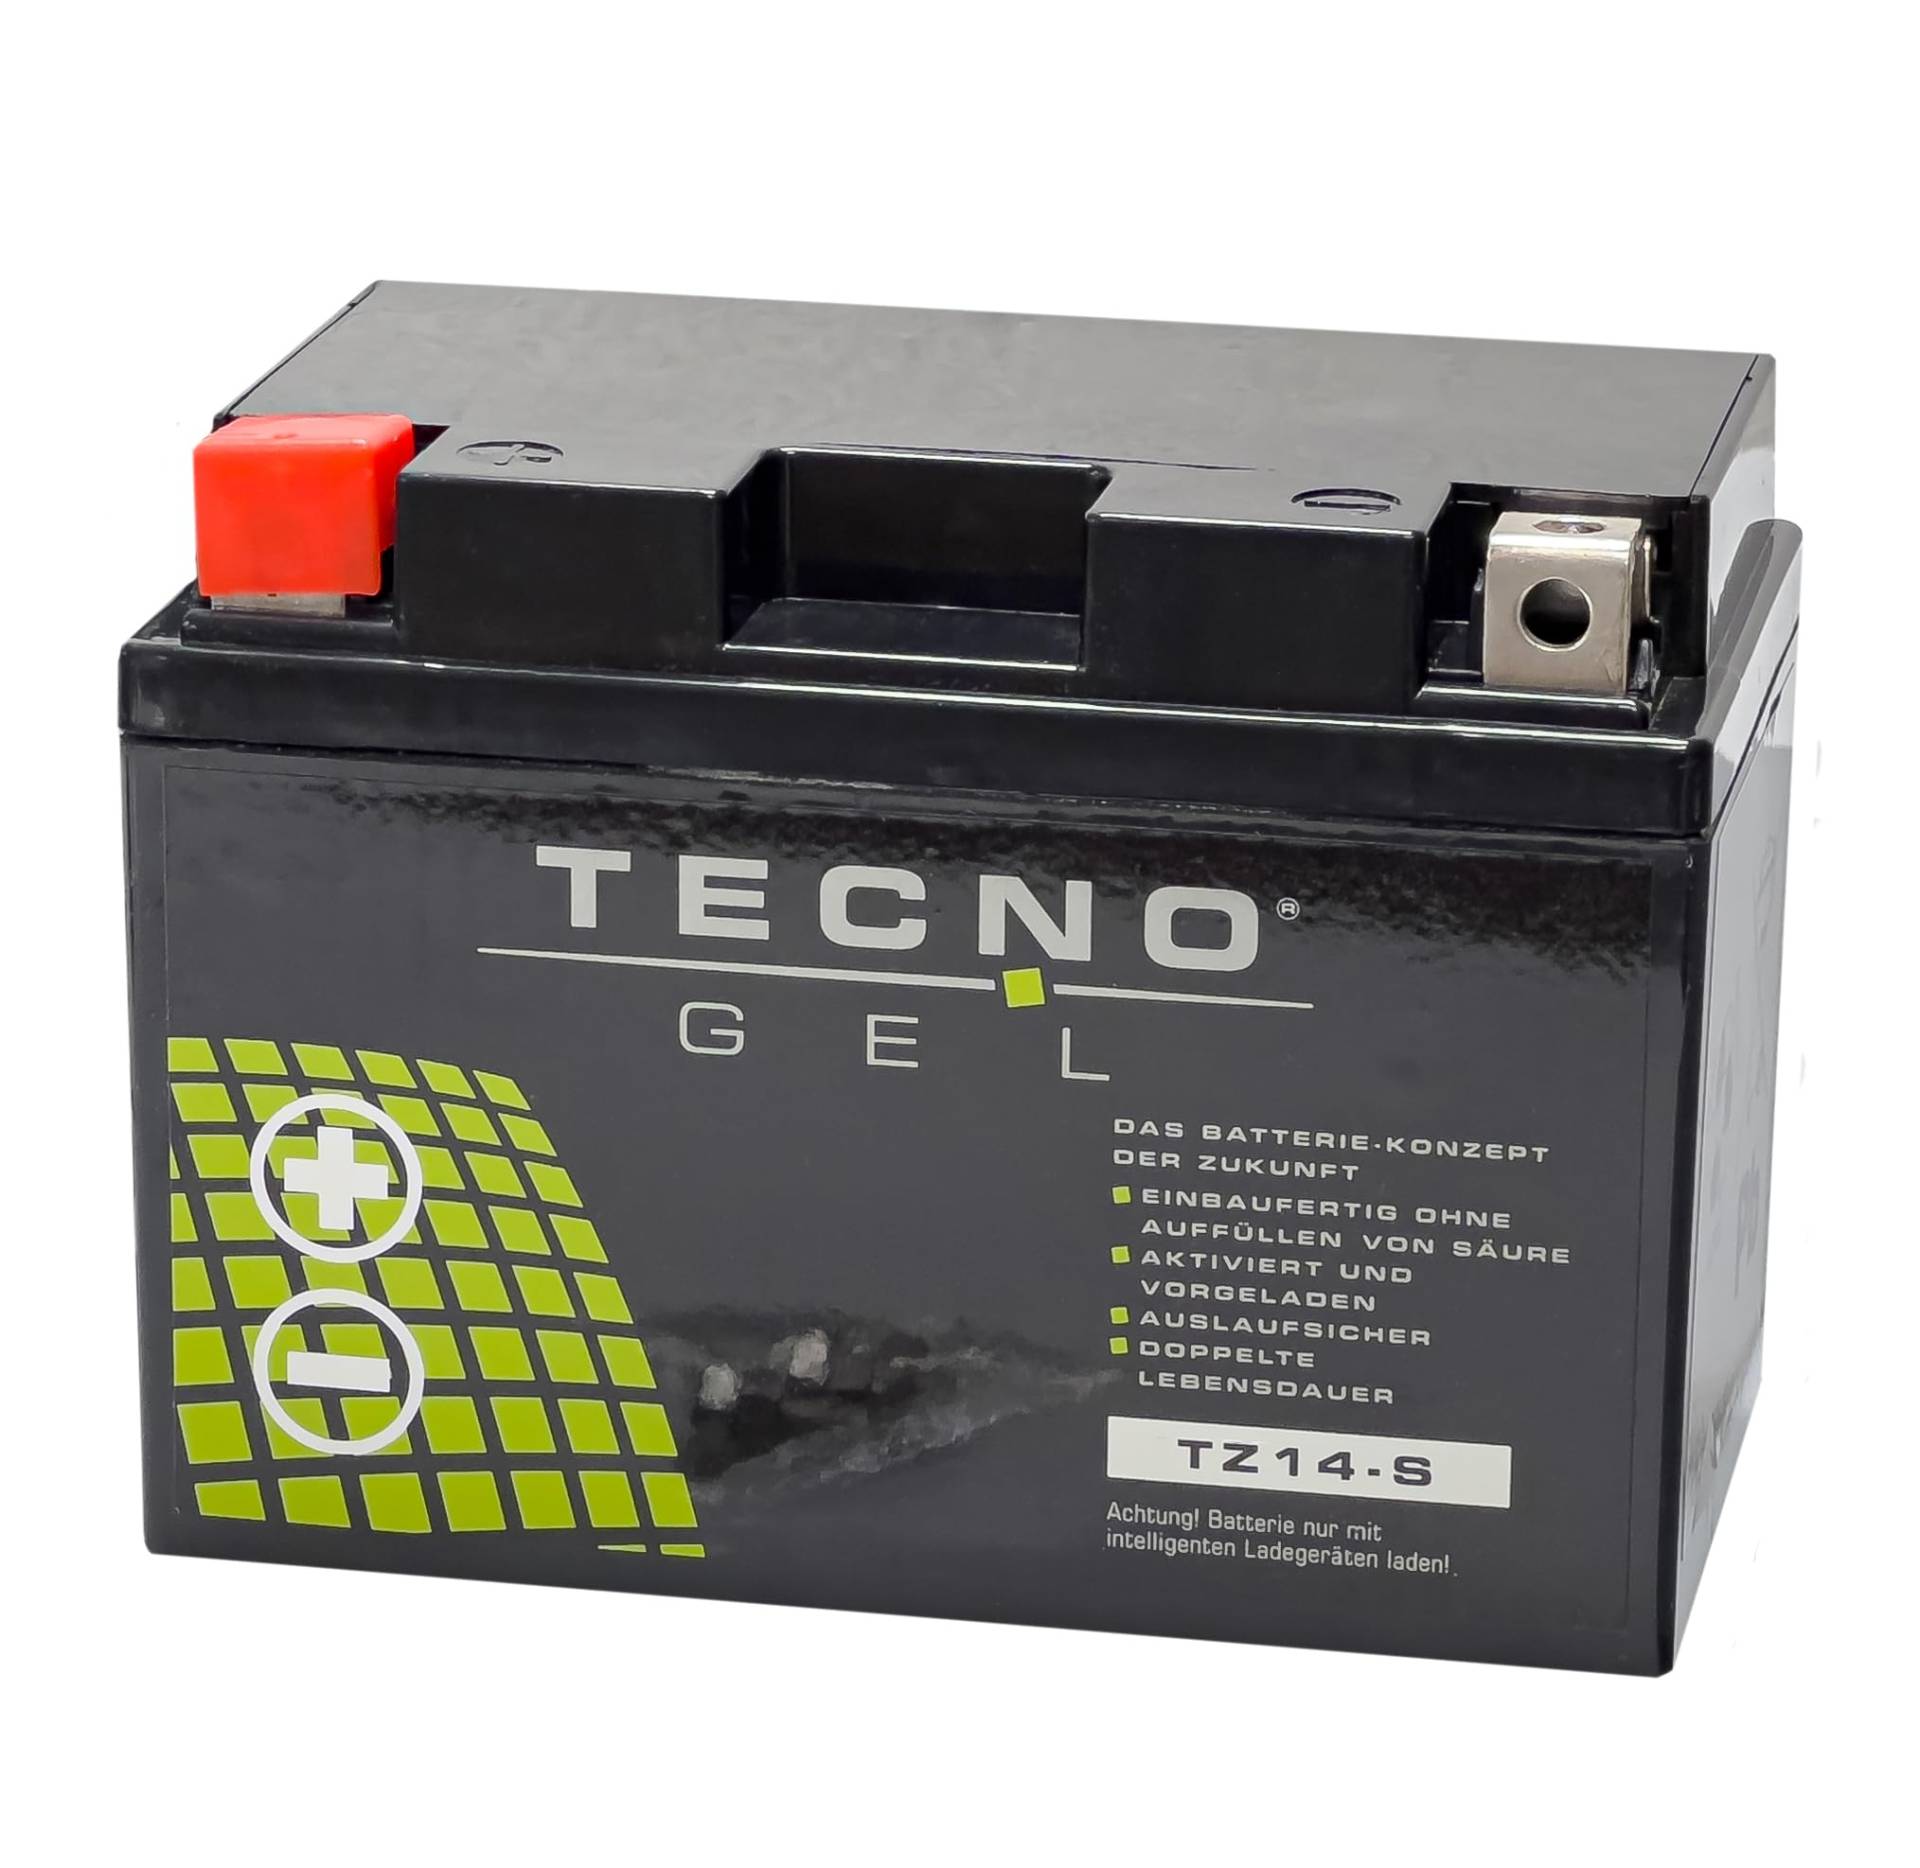 TECNO-GEL Motorrad-Batterie für YTZ14-S für Ktm Adventure 950/990/1050/1090/1190, 12V Gel-Batterie 11,3Ah (DIN 51101), 151x87x110 mm von Wirth-Federn